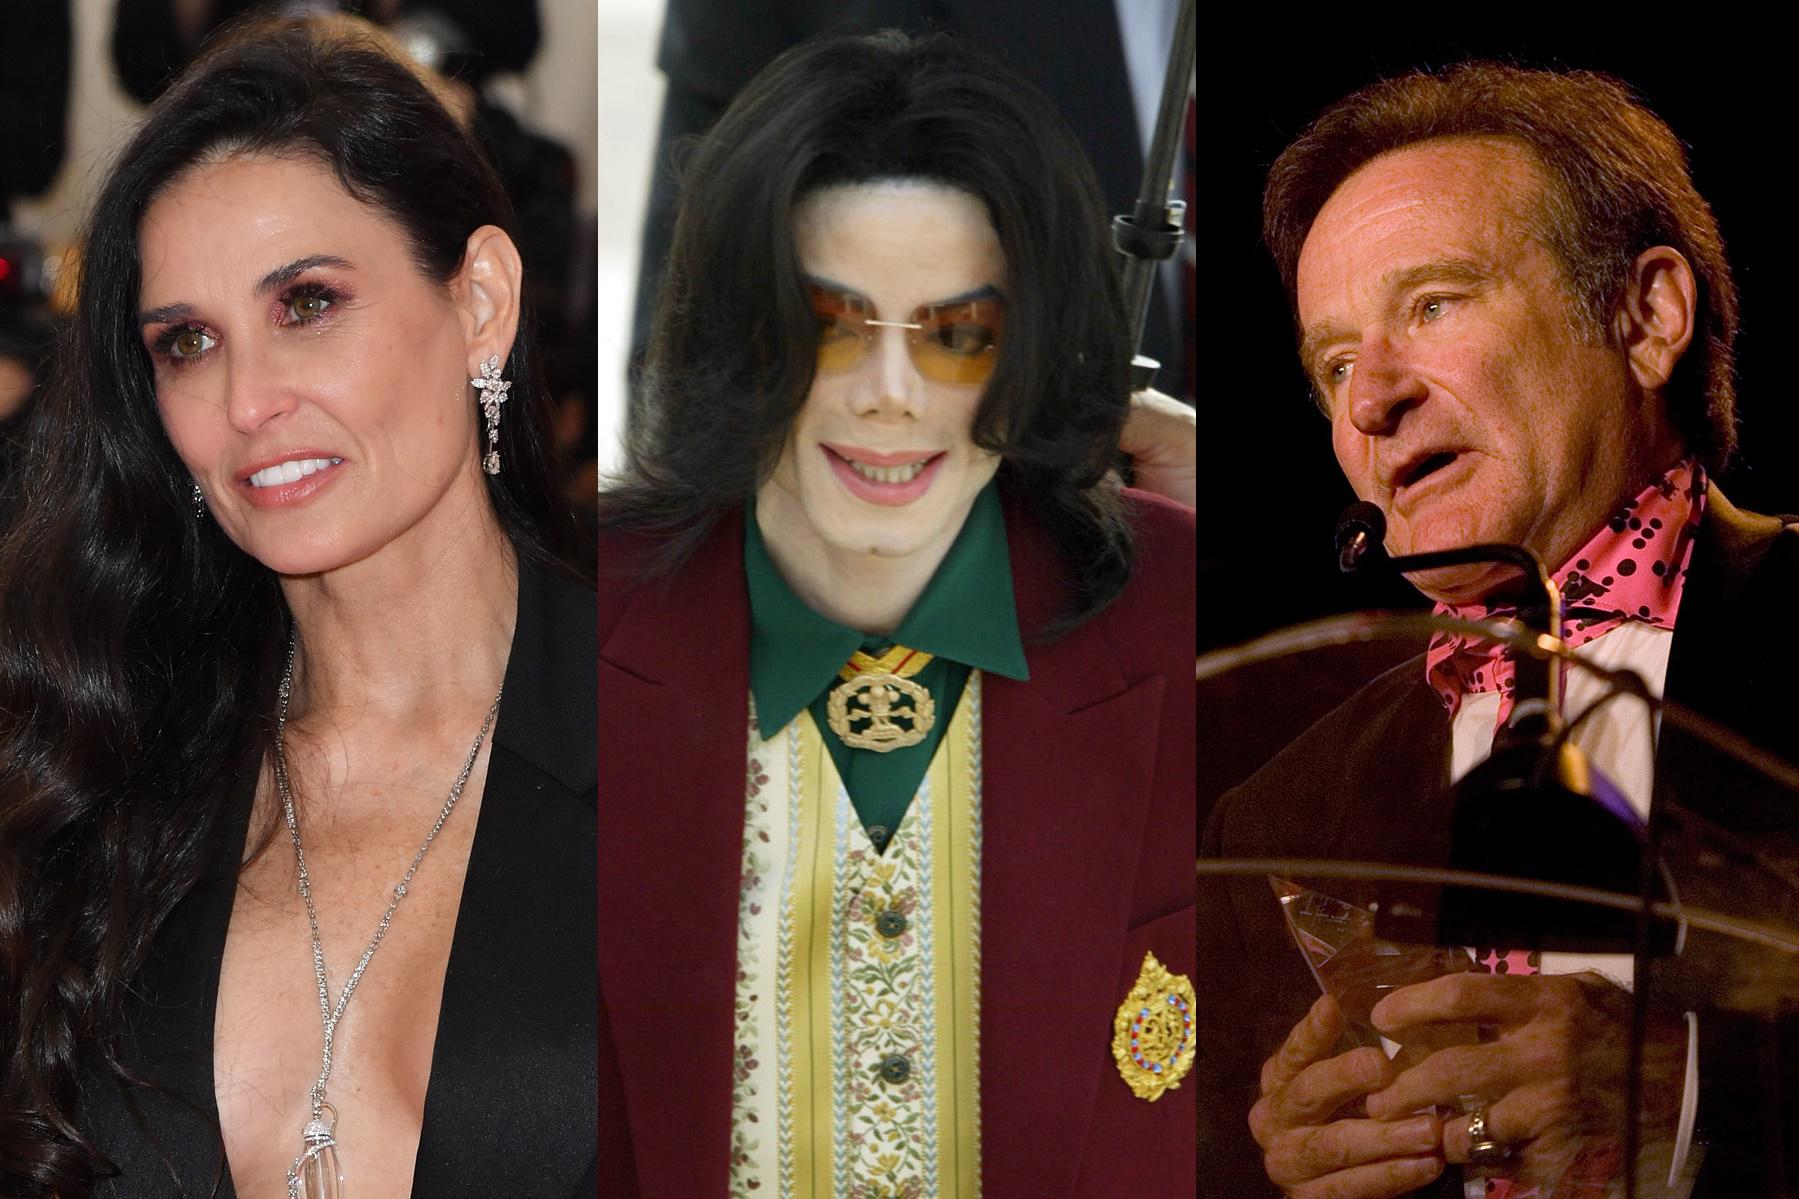 Famosos como Demi Moore, Michael Jackson y Robin Williams llevaron una vida trágica tras las cámaras. Foto: AFP.